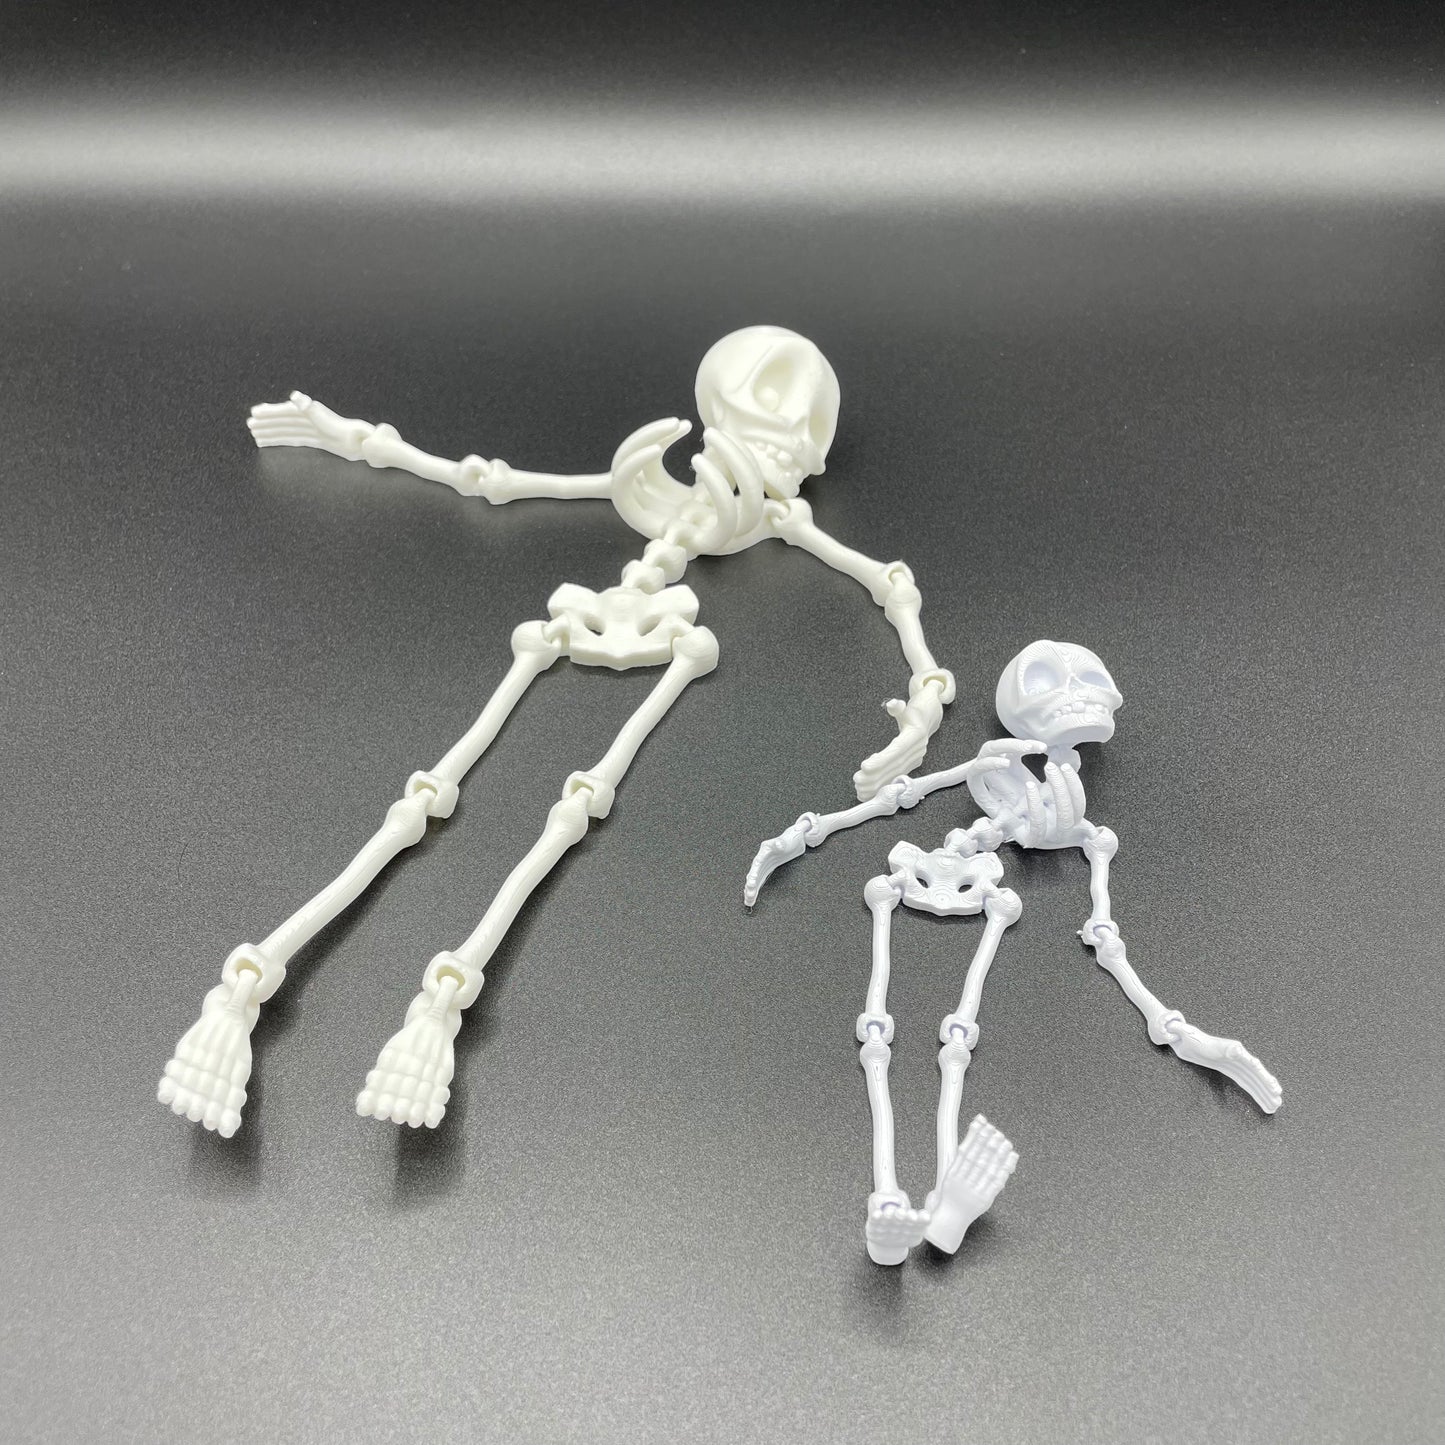 3D Printed Small Flexi Skeleton